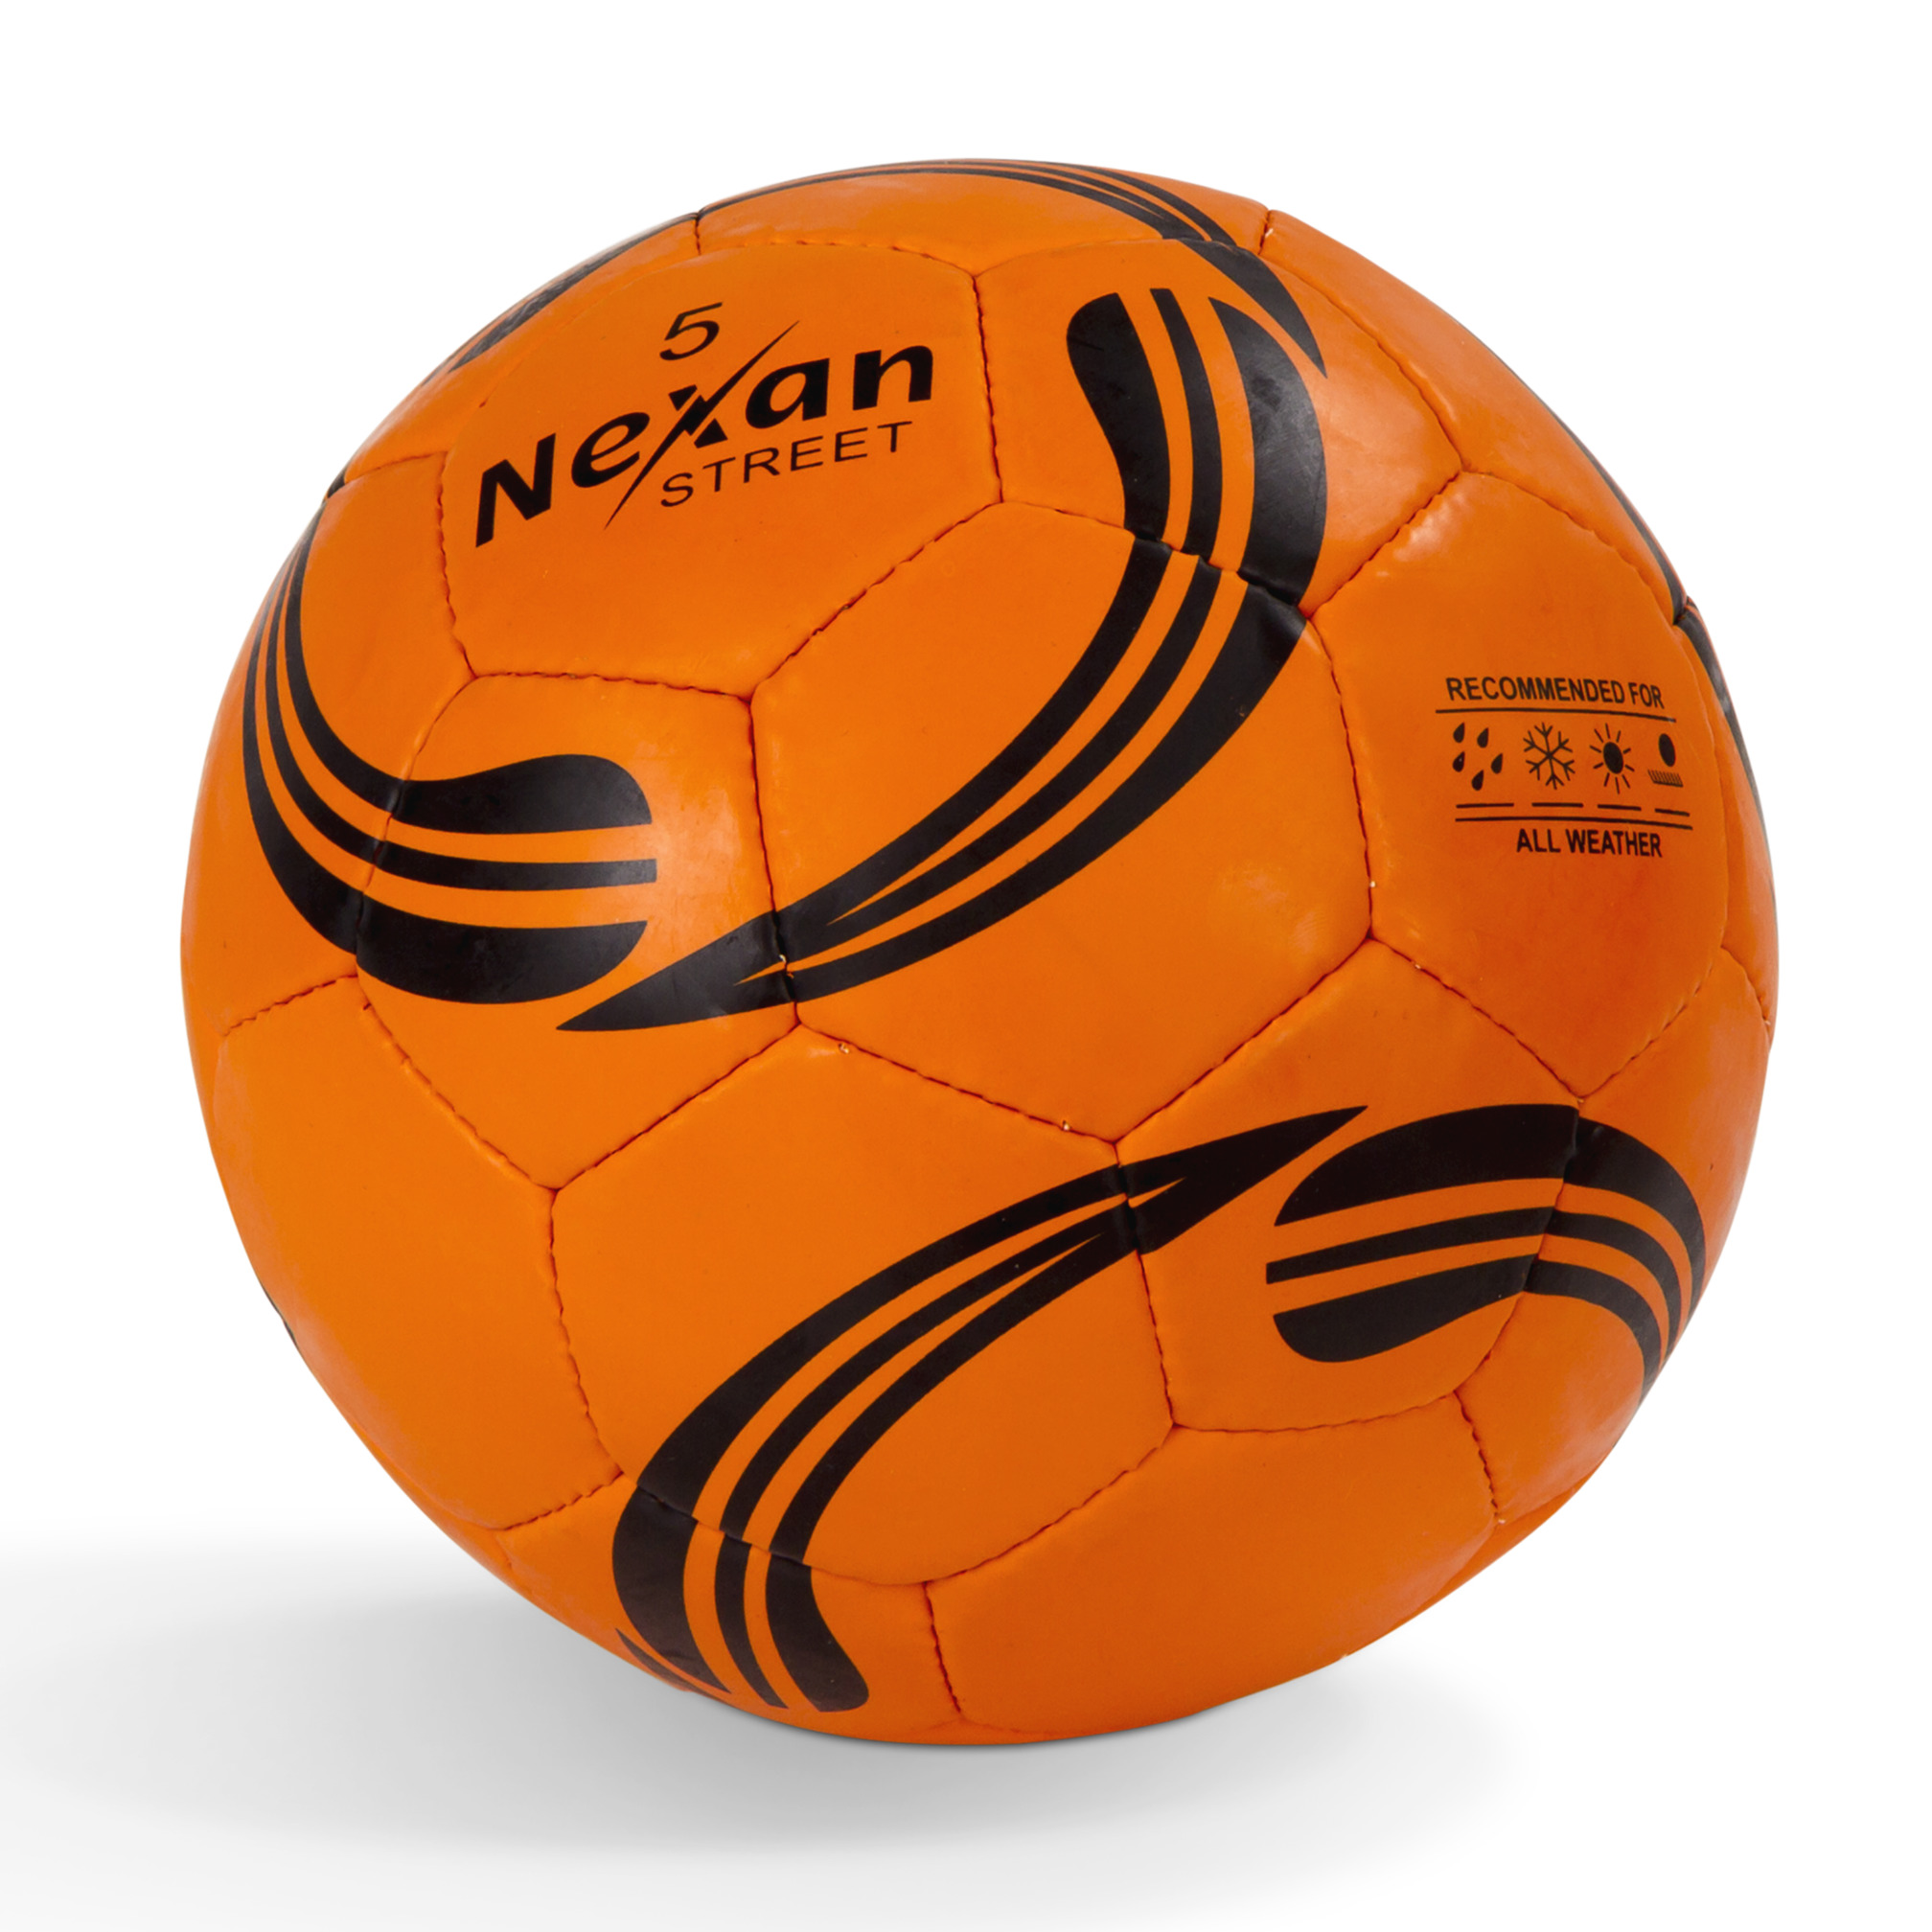 Ballon de football "Nexan" Street, T5